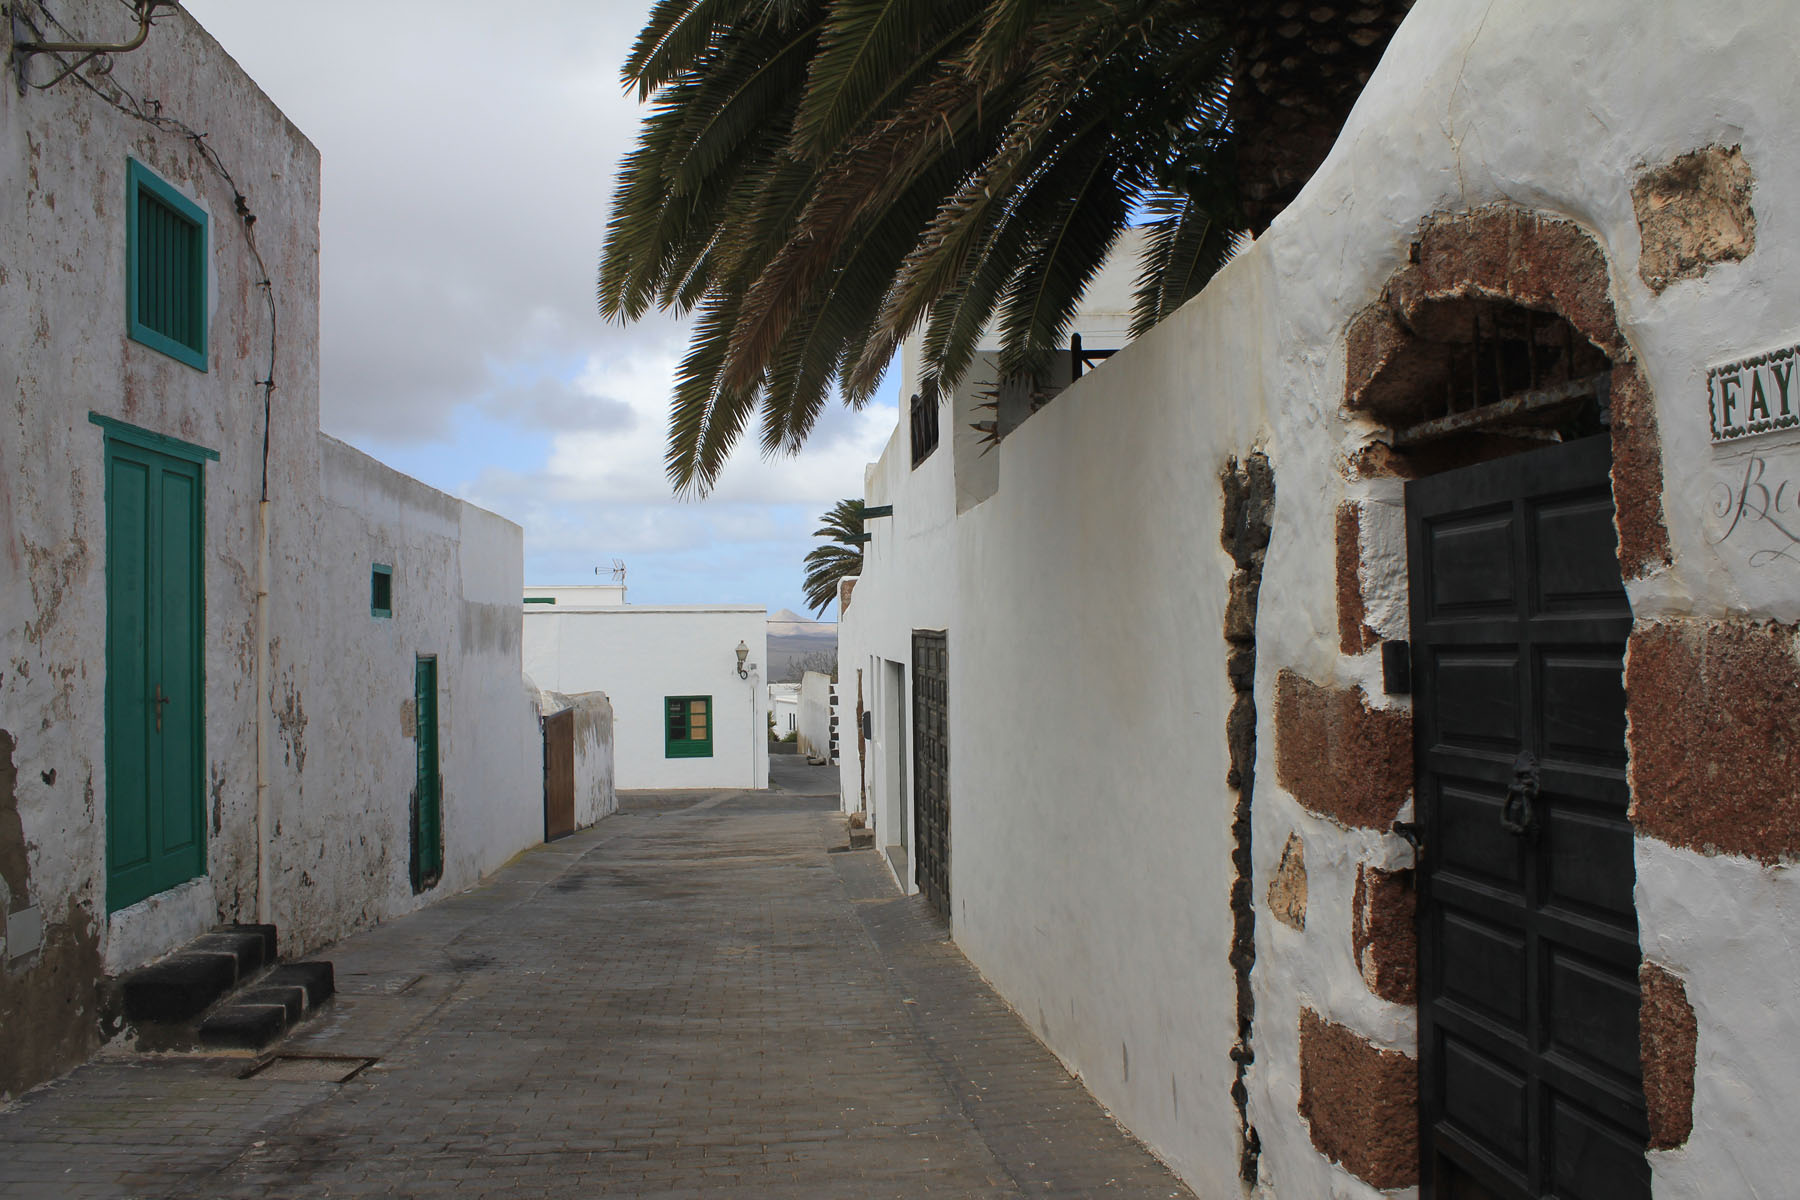 Lanzarote, Teguise, rue typique